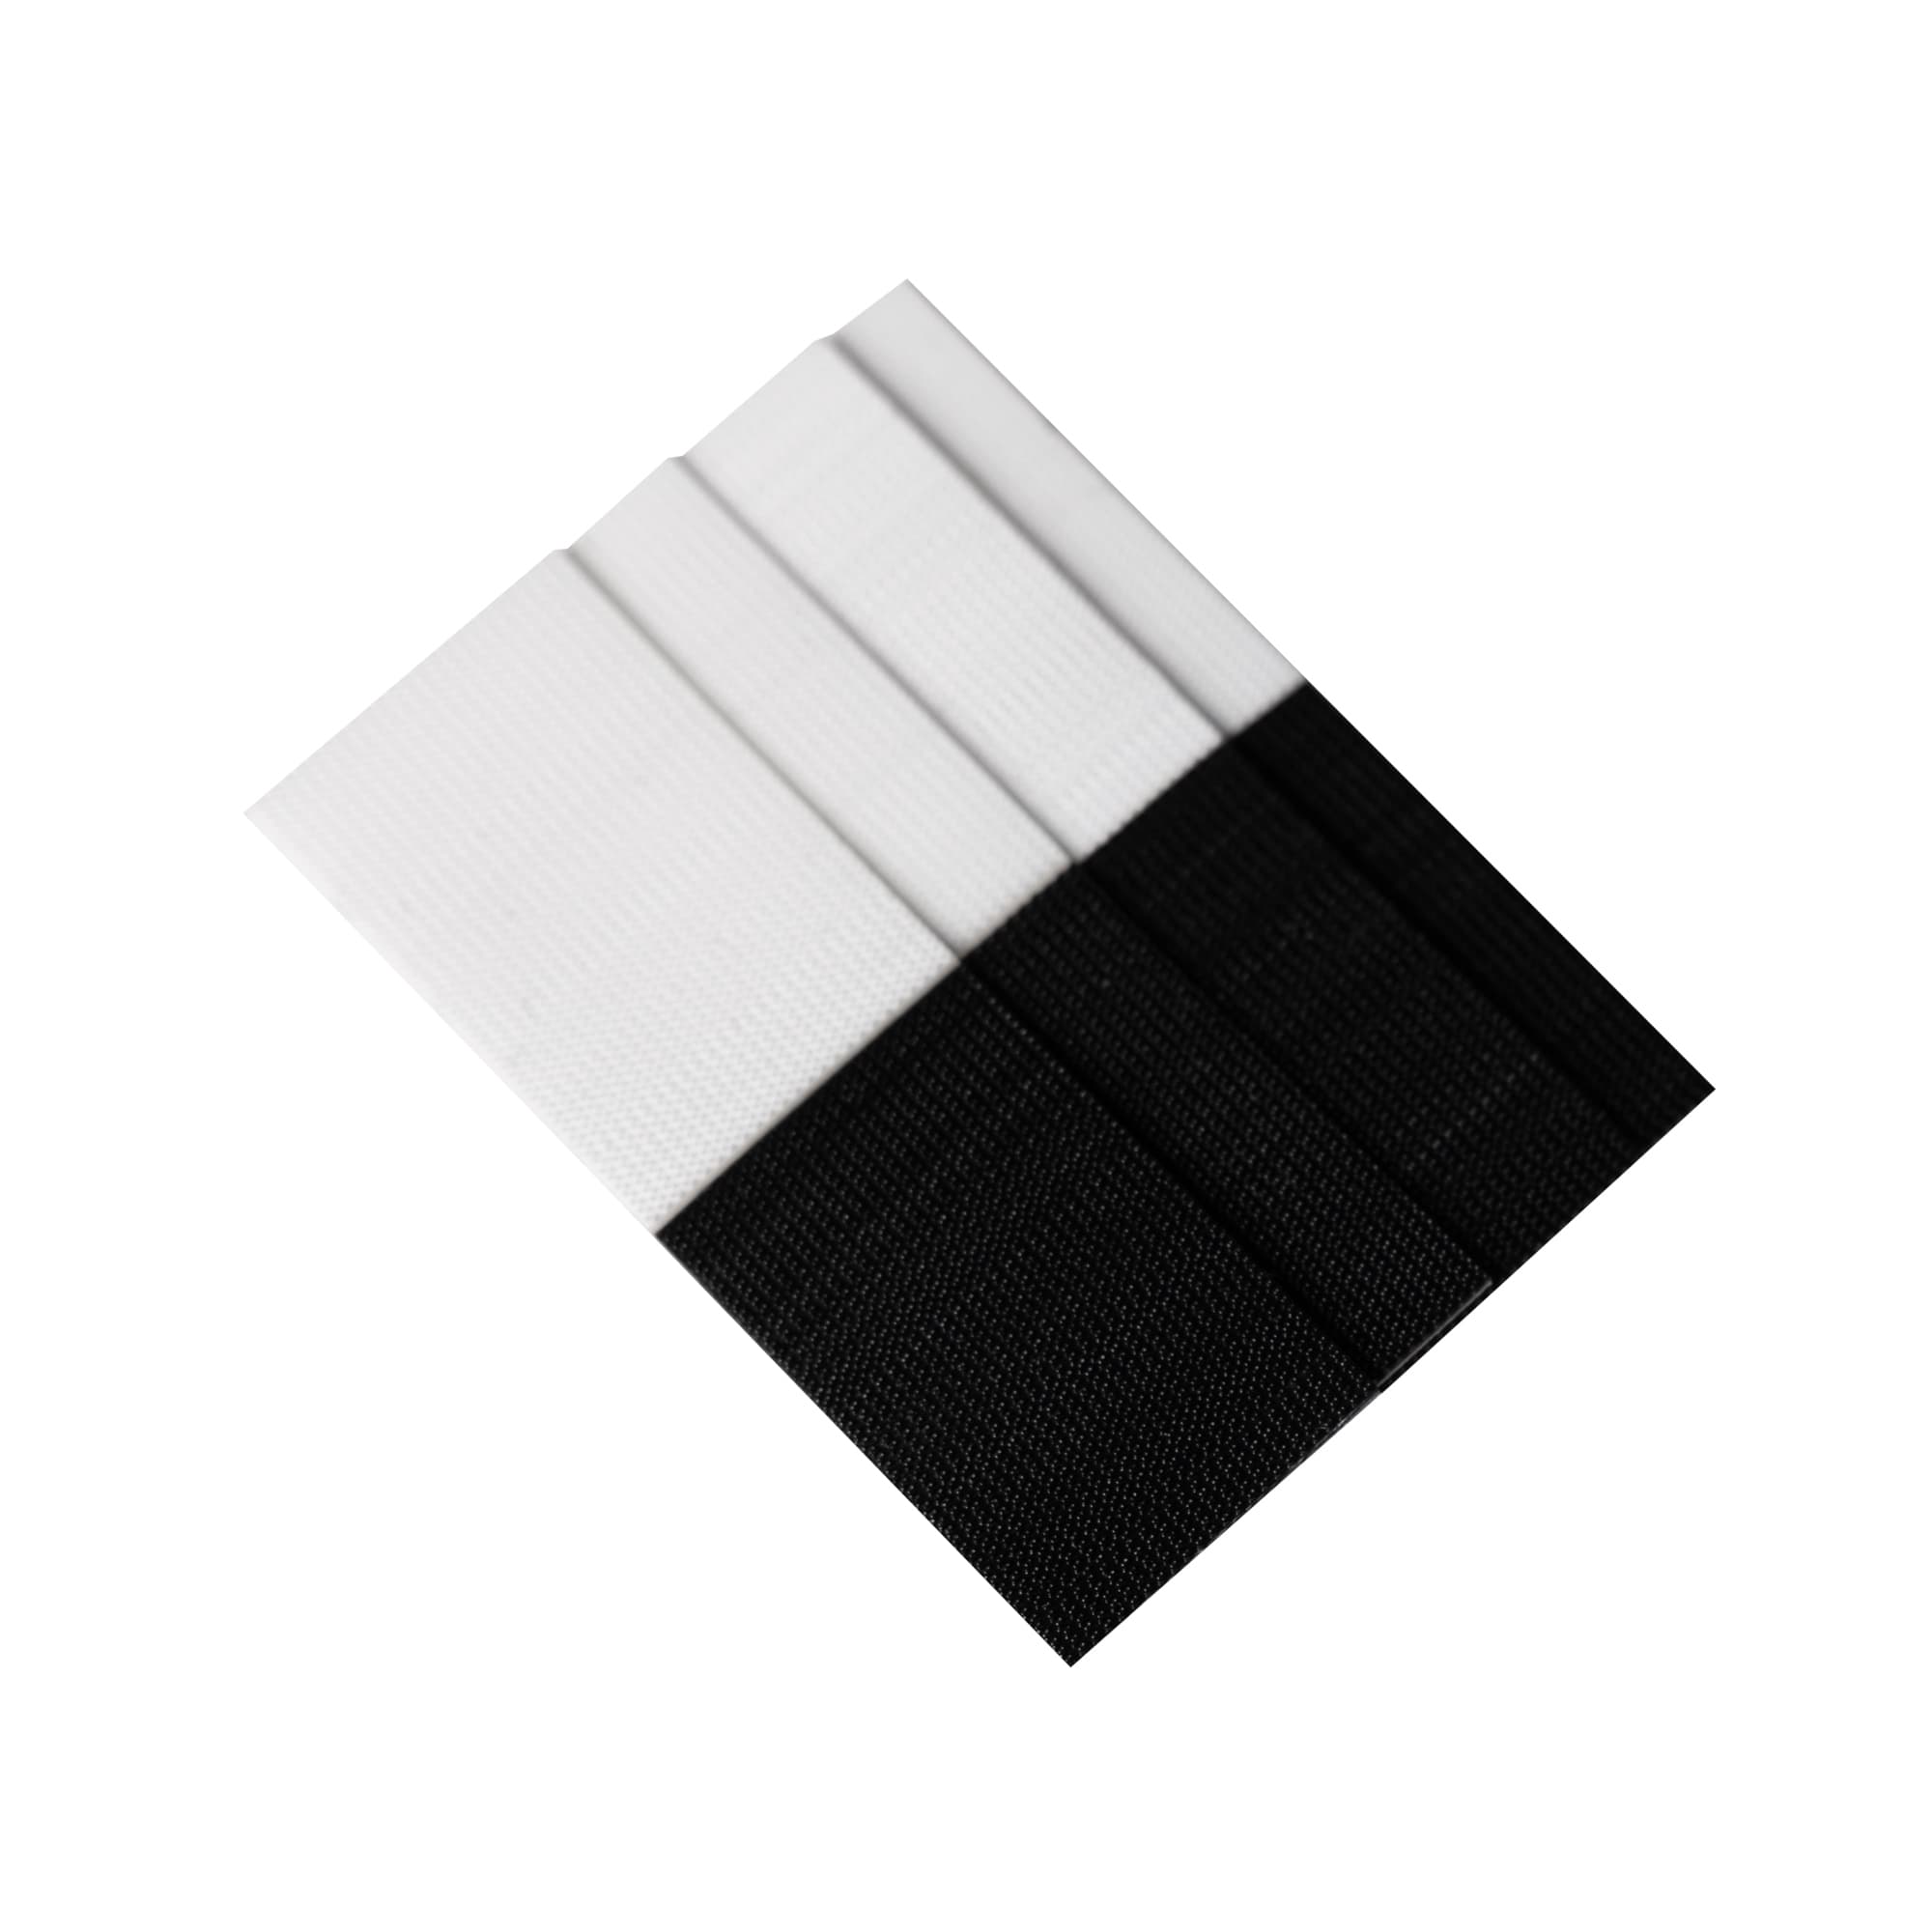 Monochrome Edit, Black & White Yoga Accessories